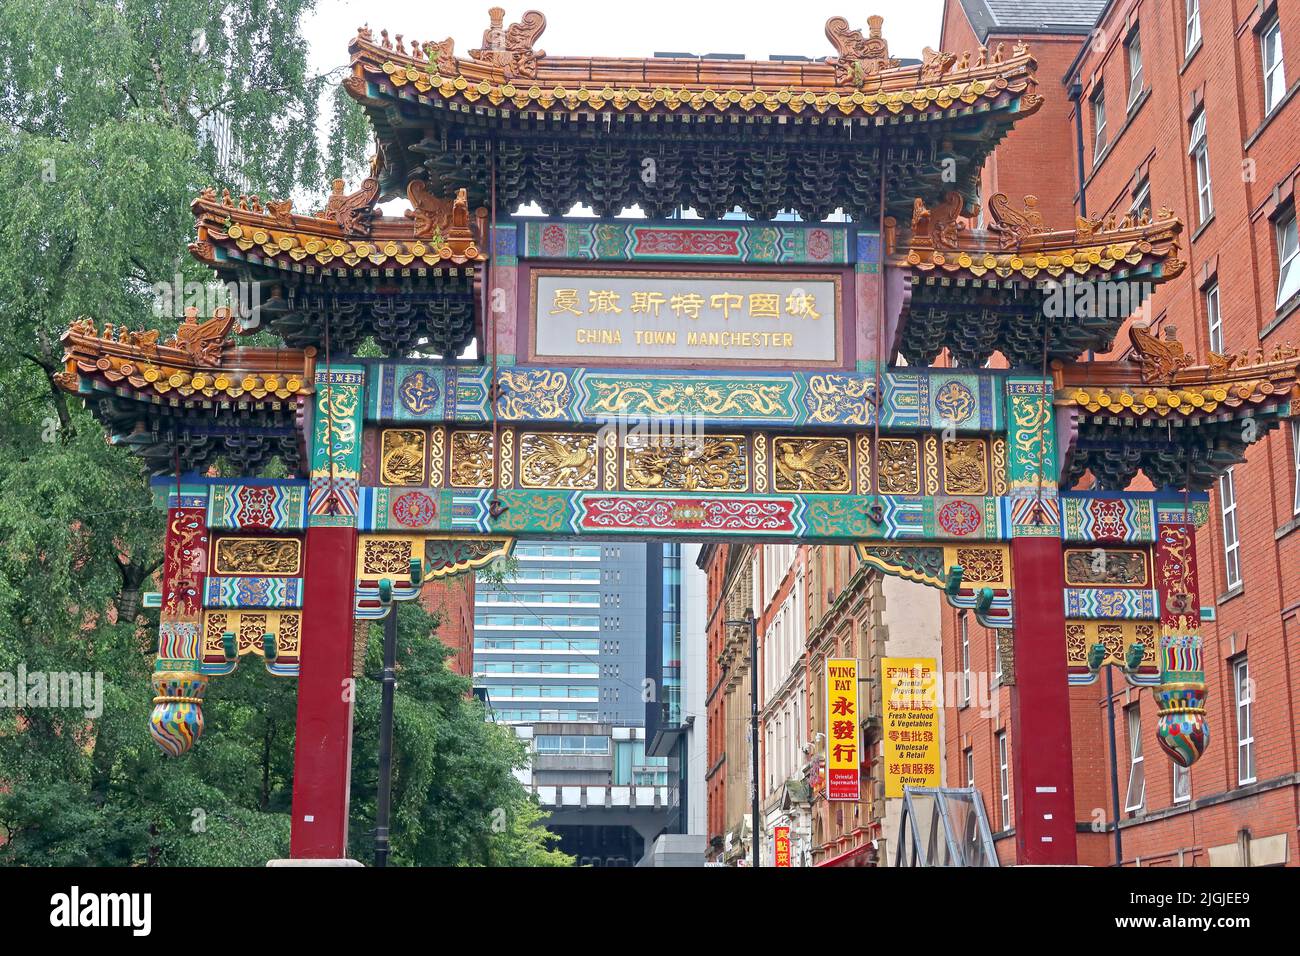 Quartier chinois de Manchester, arcade chinoise, 46 Faulkner St, Manchester, Angleterre, Royaume-Uni, M1 4FH - Arch de Chinatown, construit en 1987 Banque D'Images